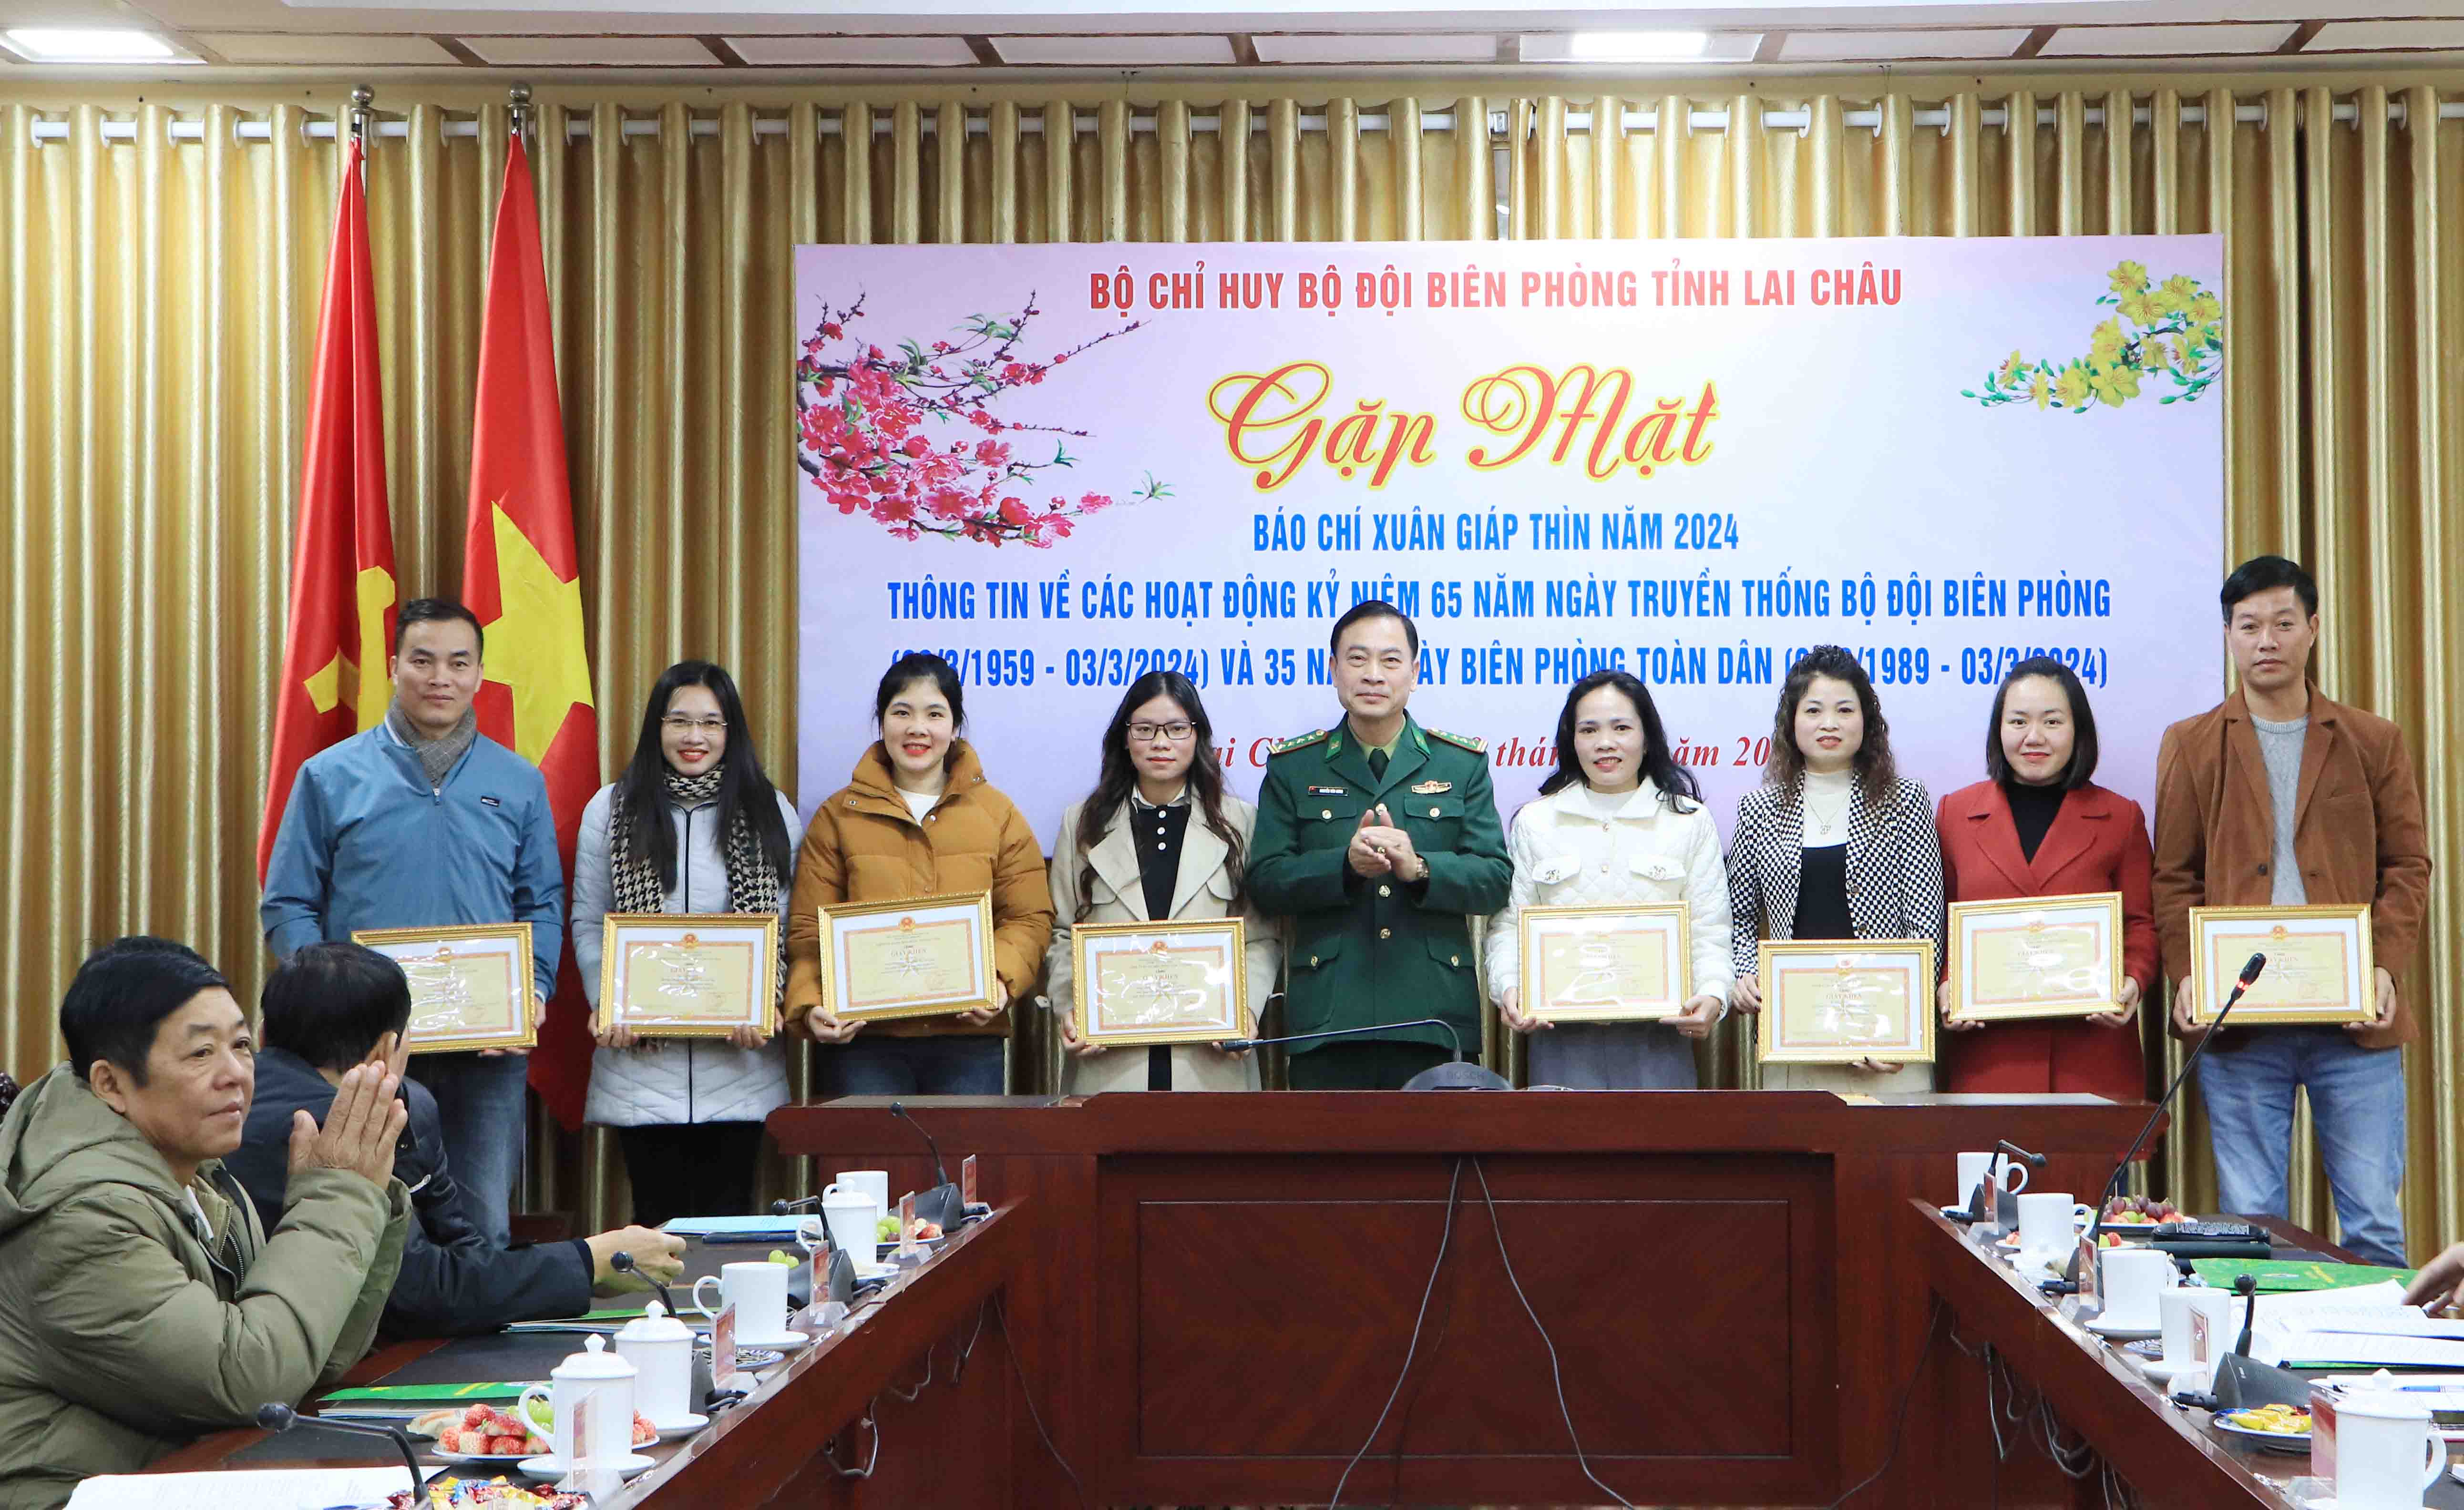 Đại tá Nguyễn Văn Hưng - Chính ủy Bộ Chỉ huy Bộ đội Biên phòng tỉnh tặng Giấy khen cho các phóng viên, biên tập viên có thành tích xuất sắc trong công tác phối hợp tuyên truyền về biên giới và bộ đội biên phòng năm 2023.